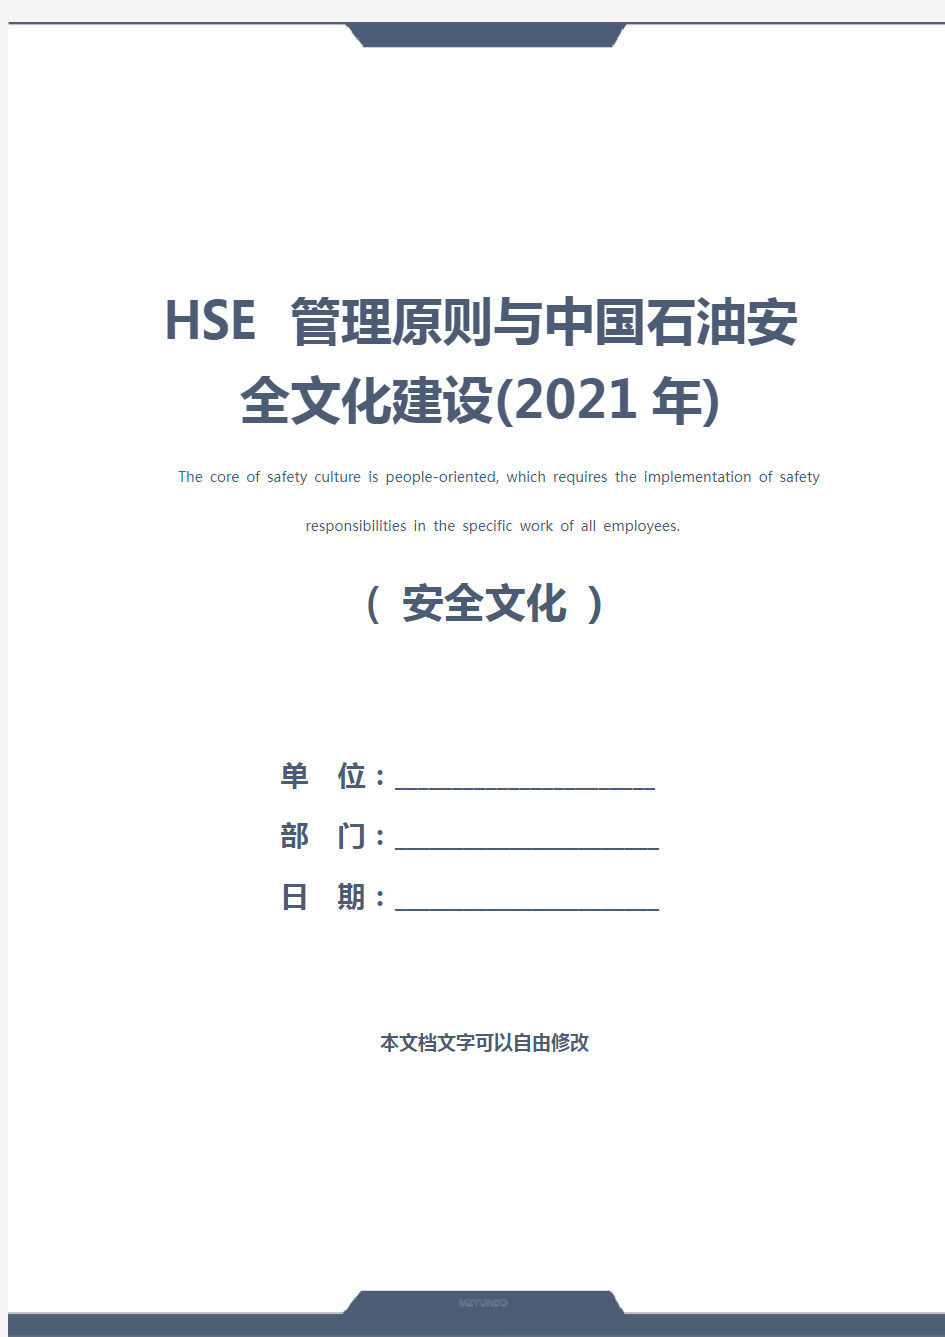 HSE 管理原则与中国石油安全文化建设(2021年)